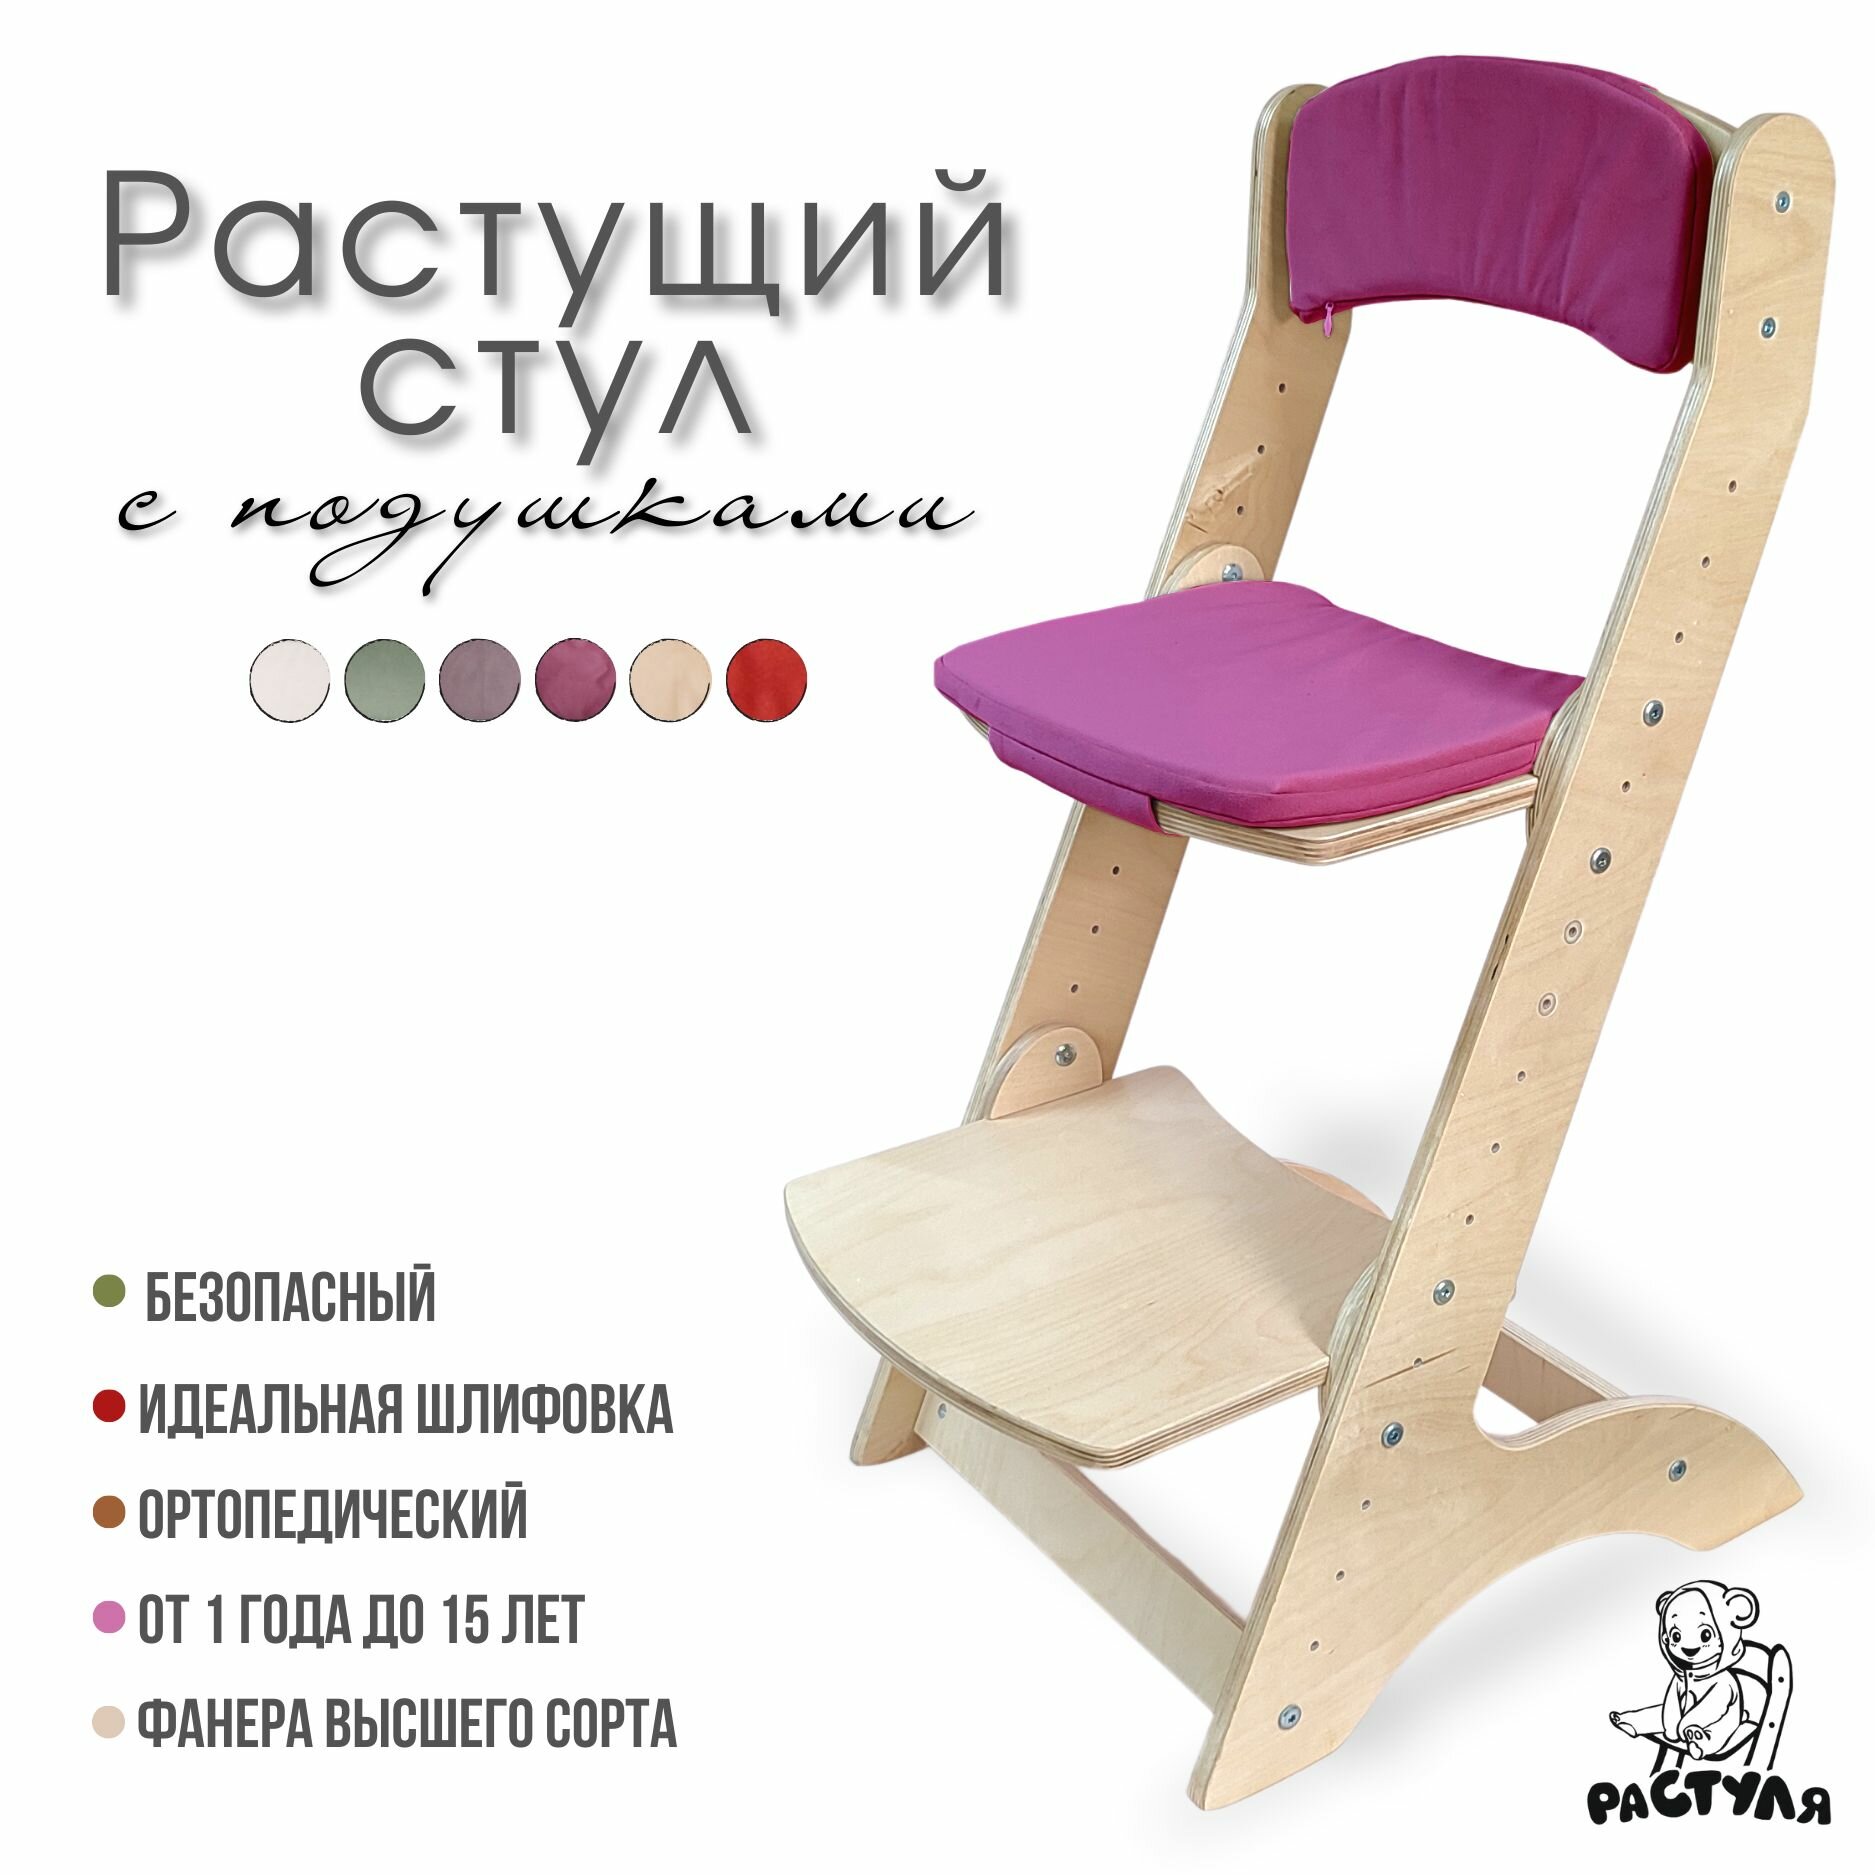 Растущий стул детский ортопедический с подушками и спинкой для дошкольников и школьников, не окрашенный.